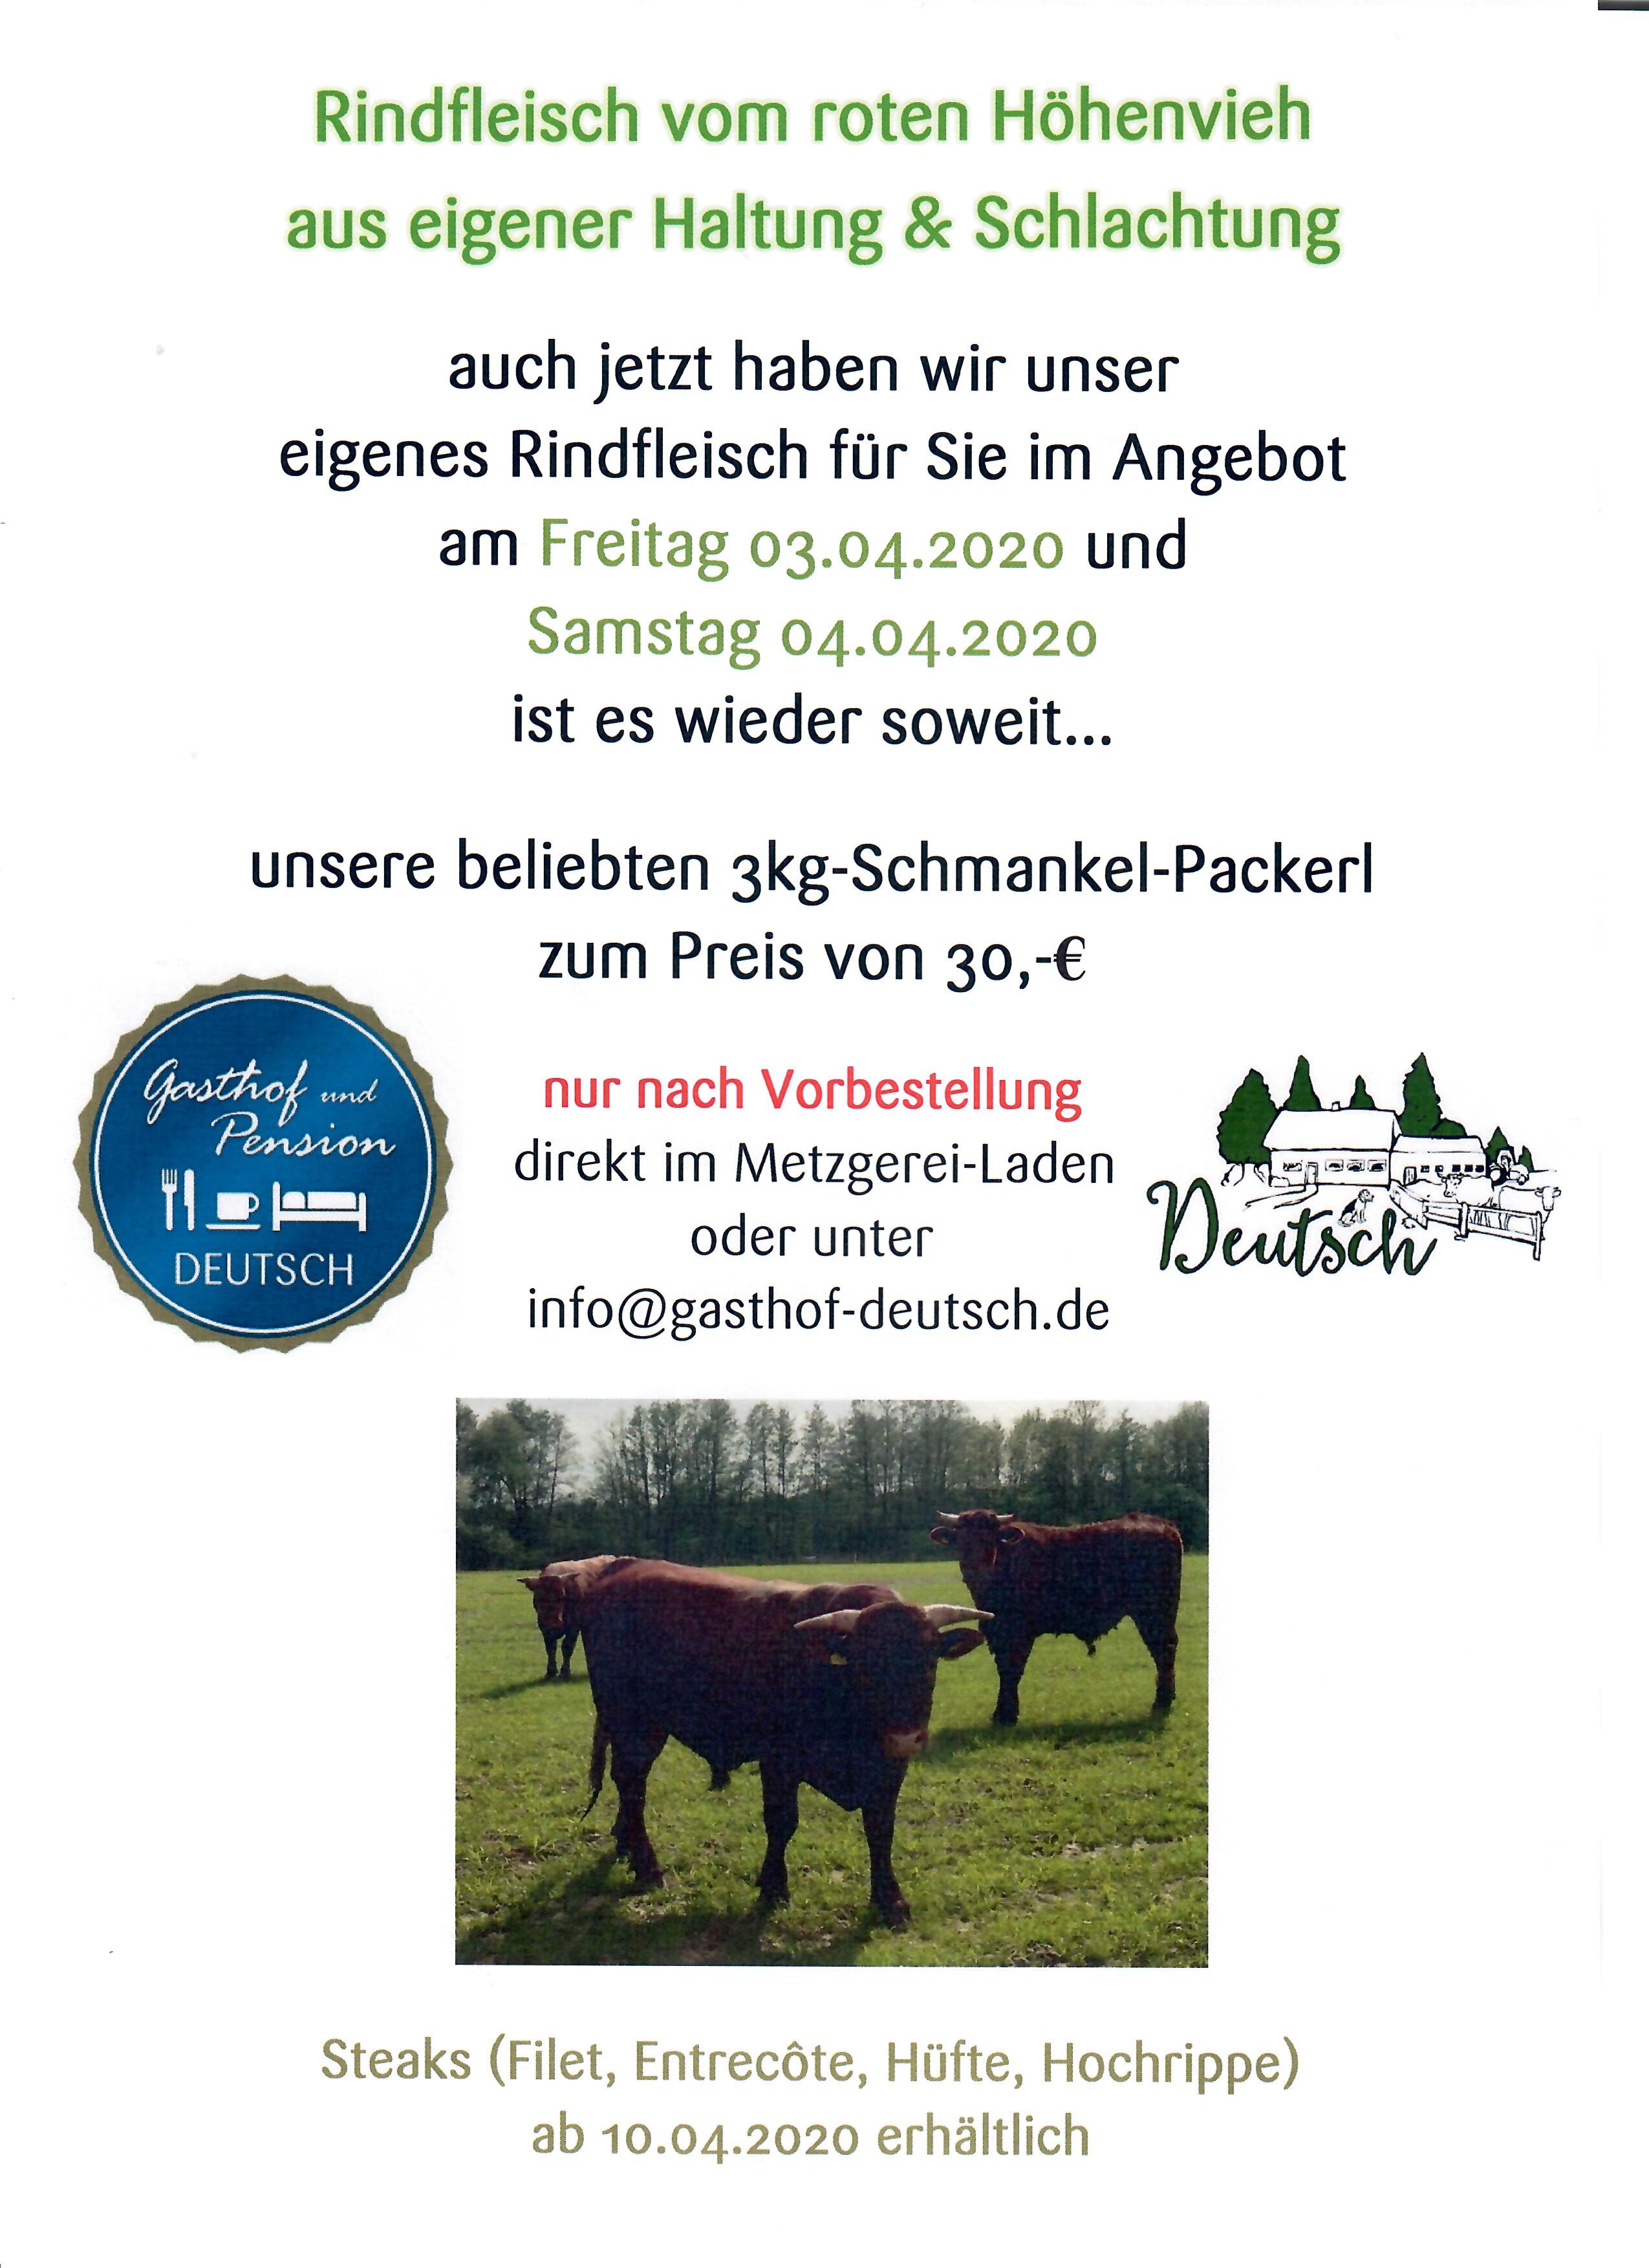 Schmankerl-Packerl am 03.04. und 04.04.2020